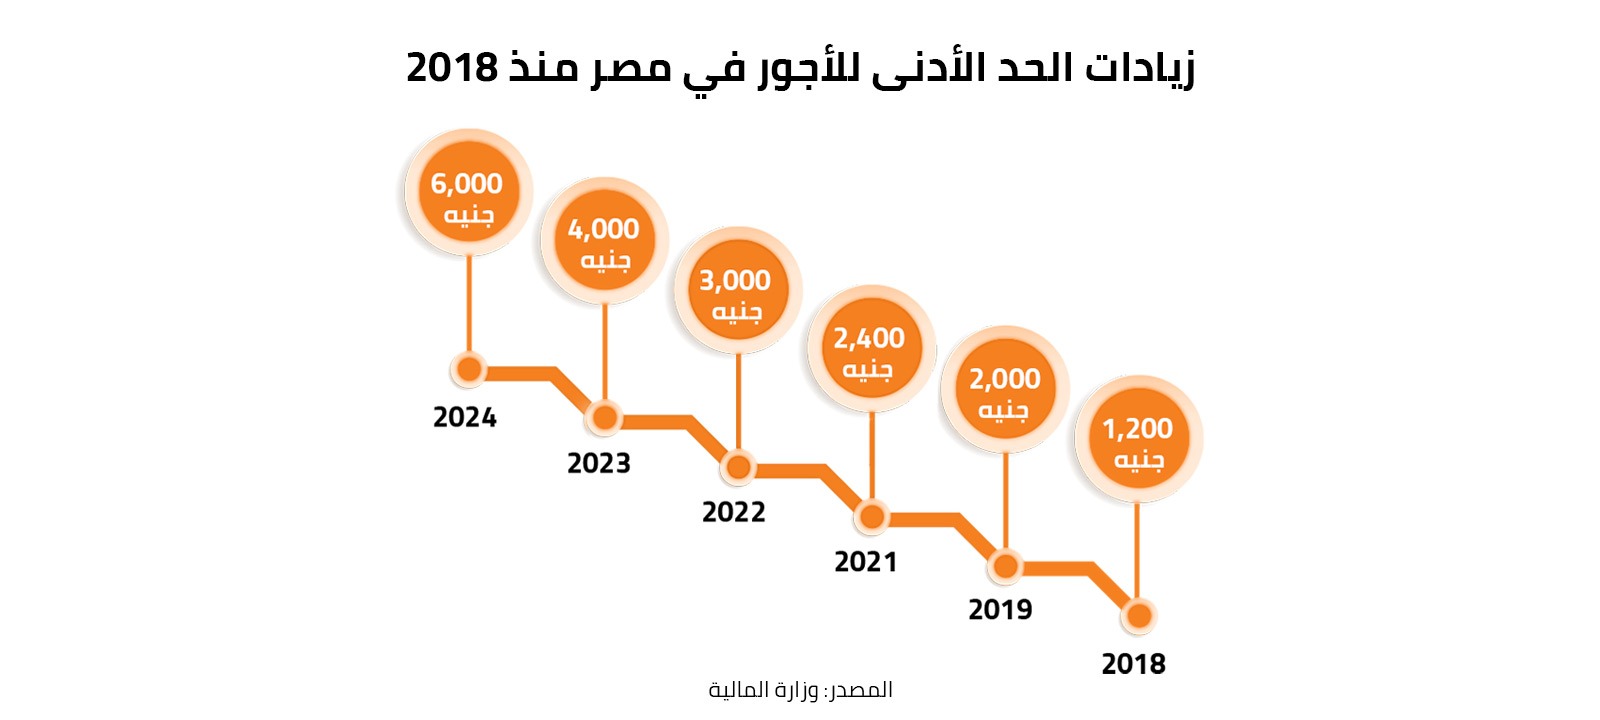 زيادات الحد الأدنى للأجور في مصر منذ 2018 